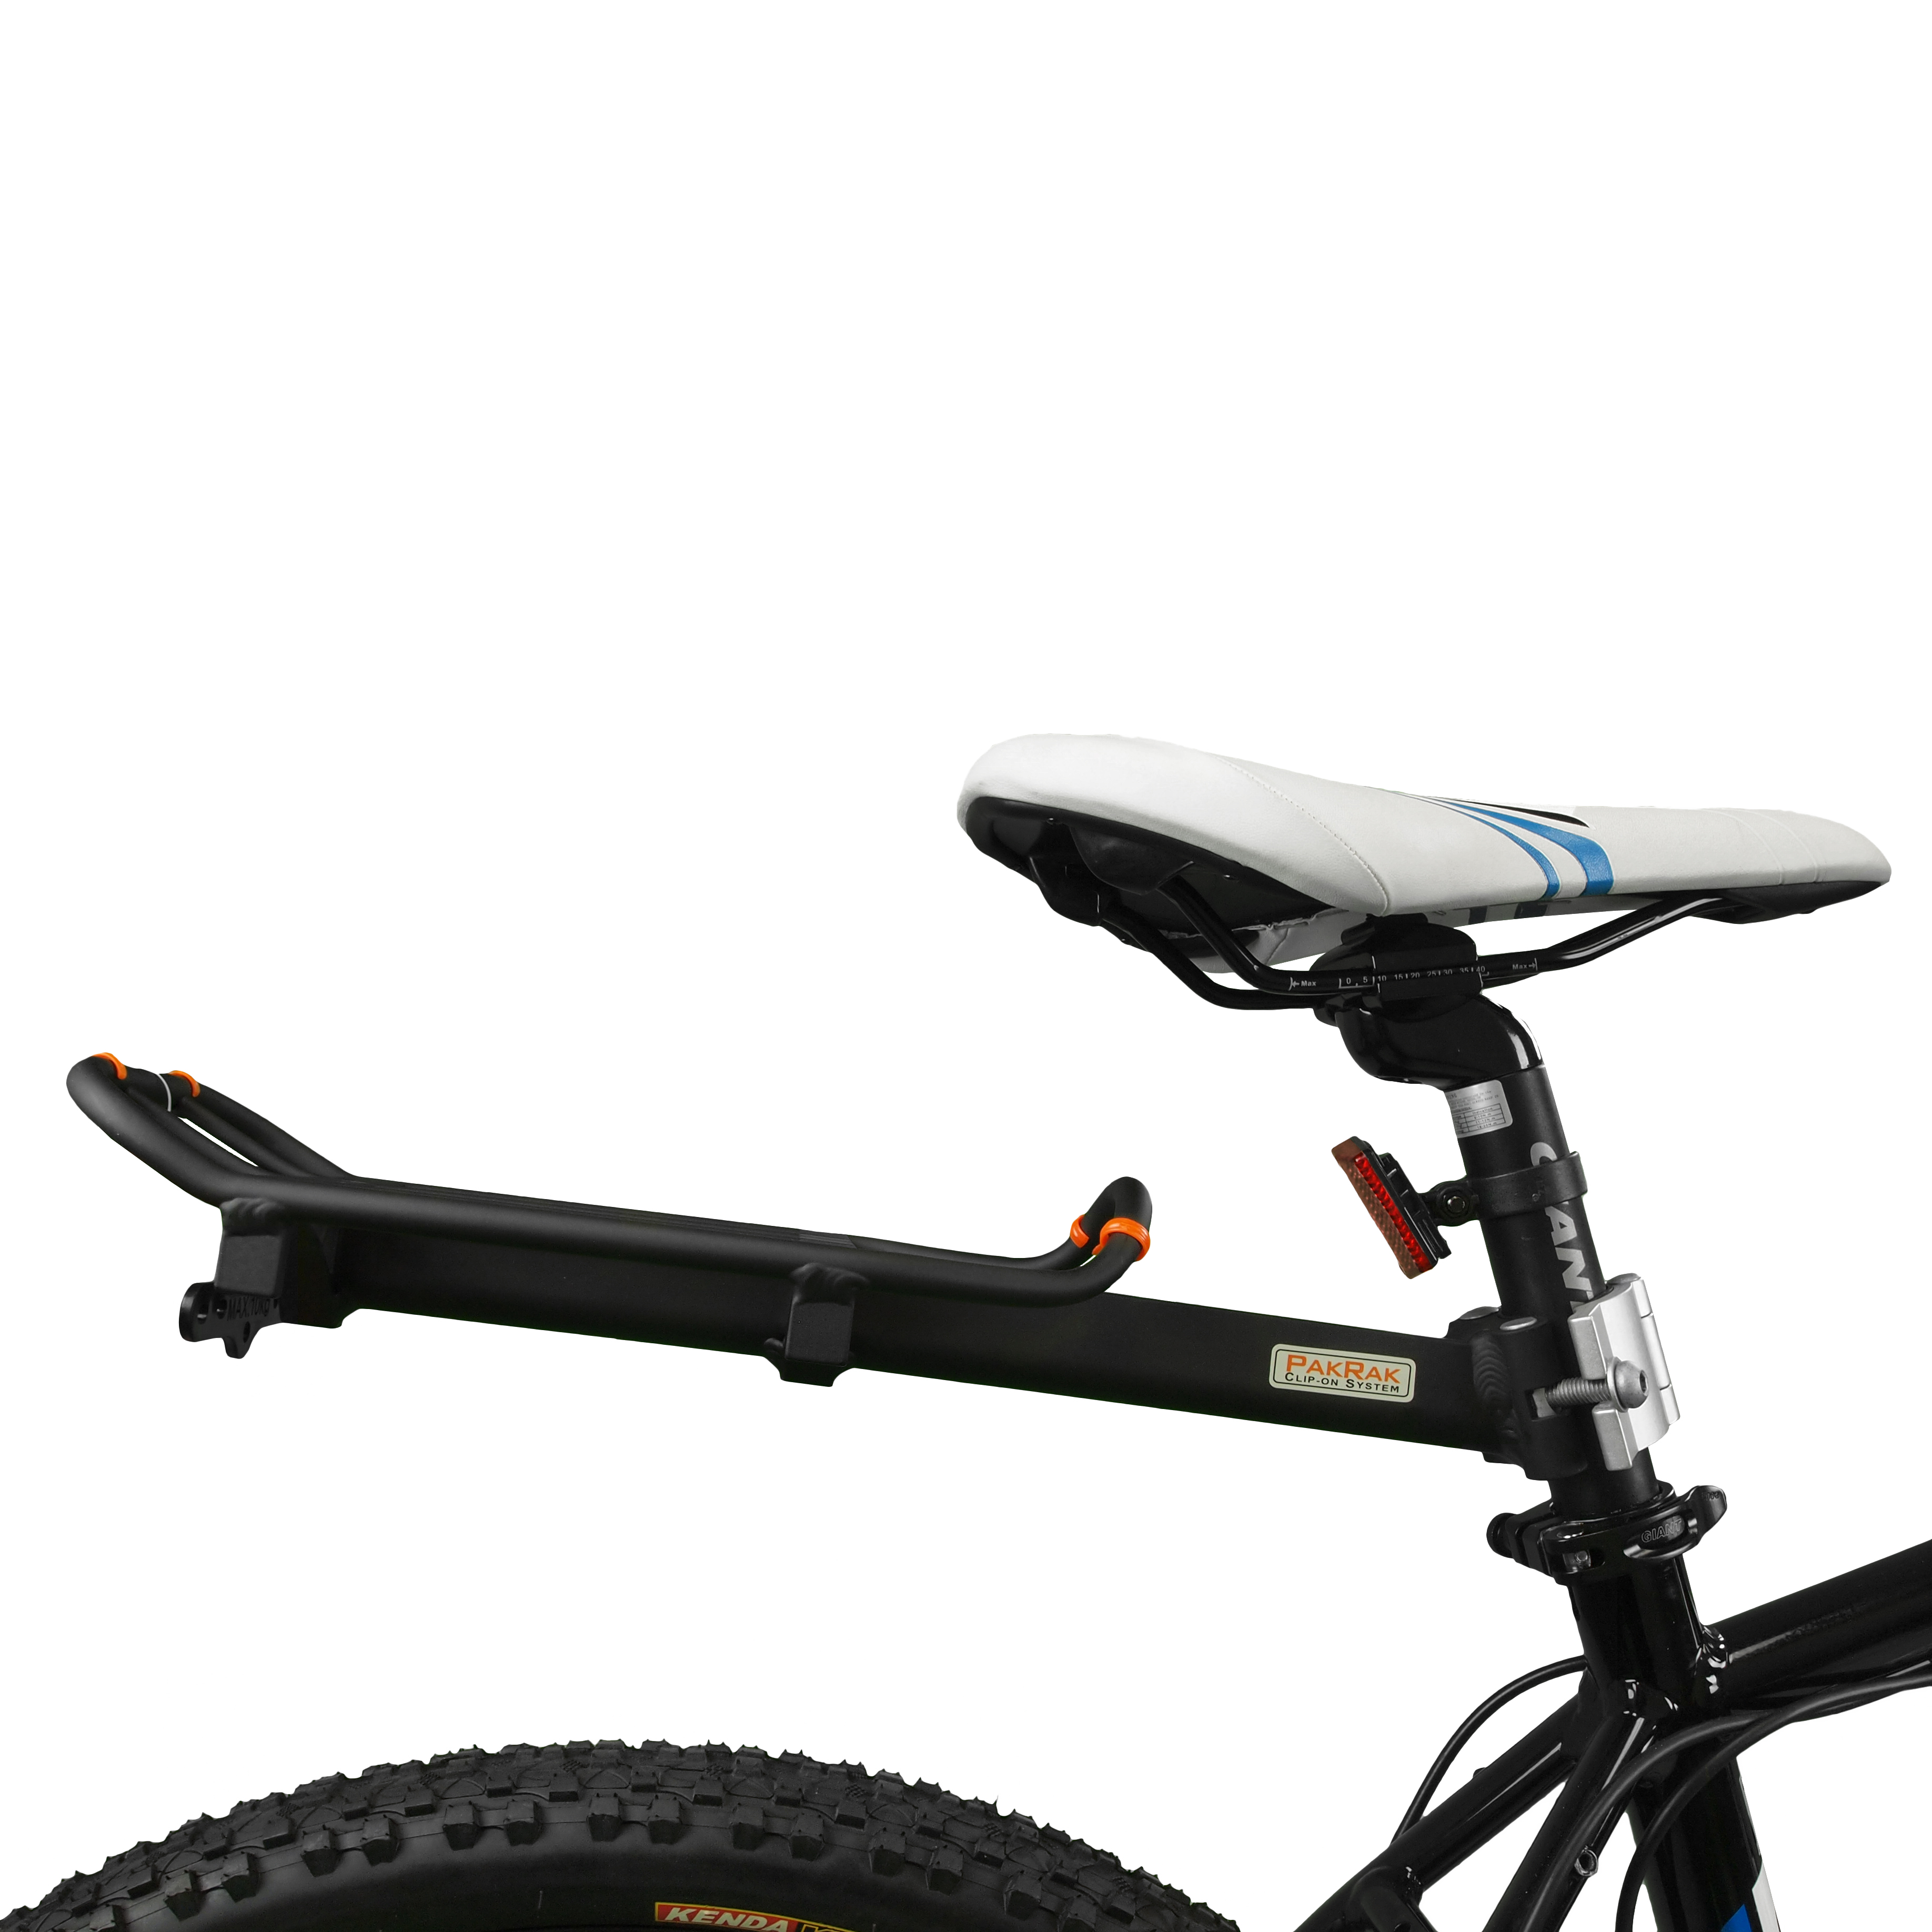 Mini Rear Carrier on Bike